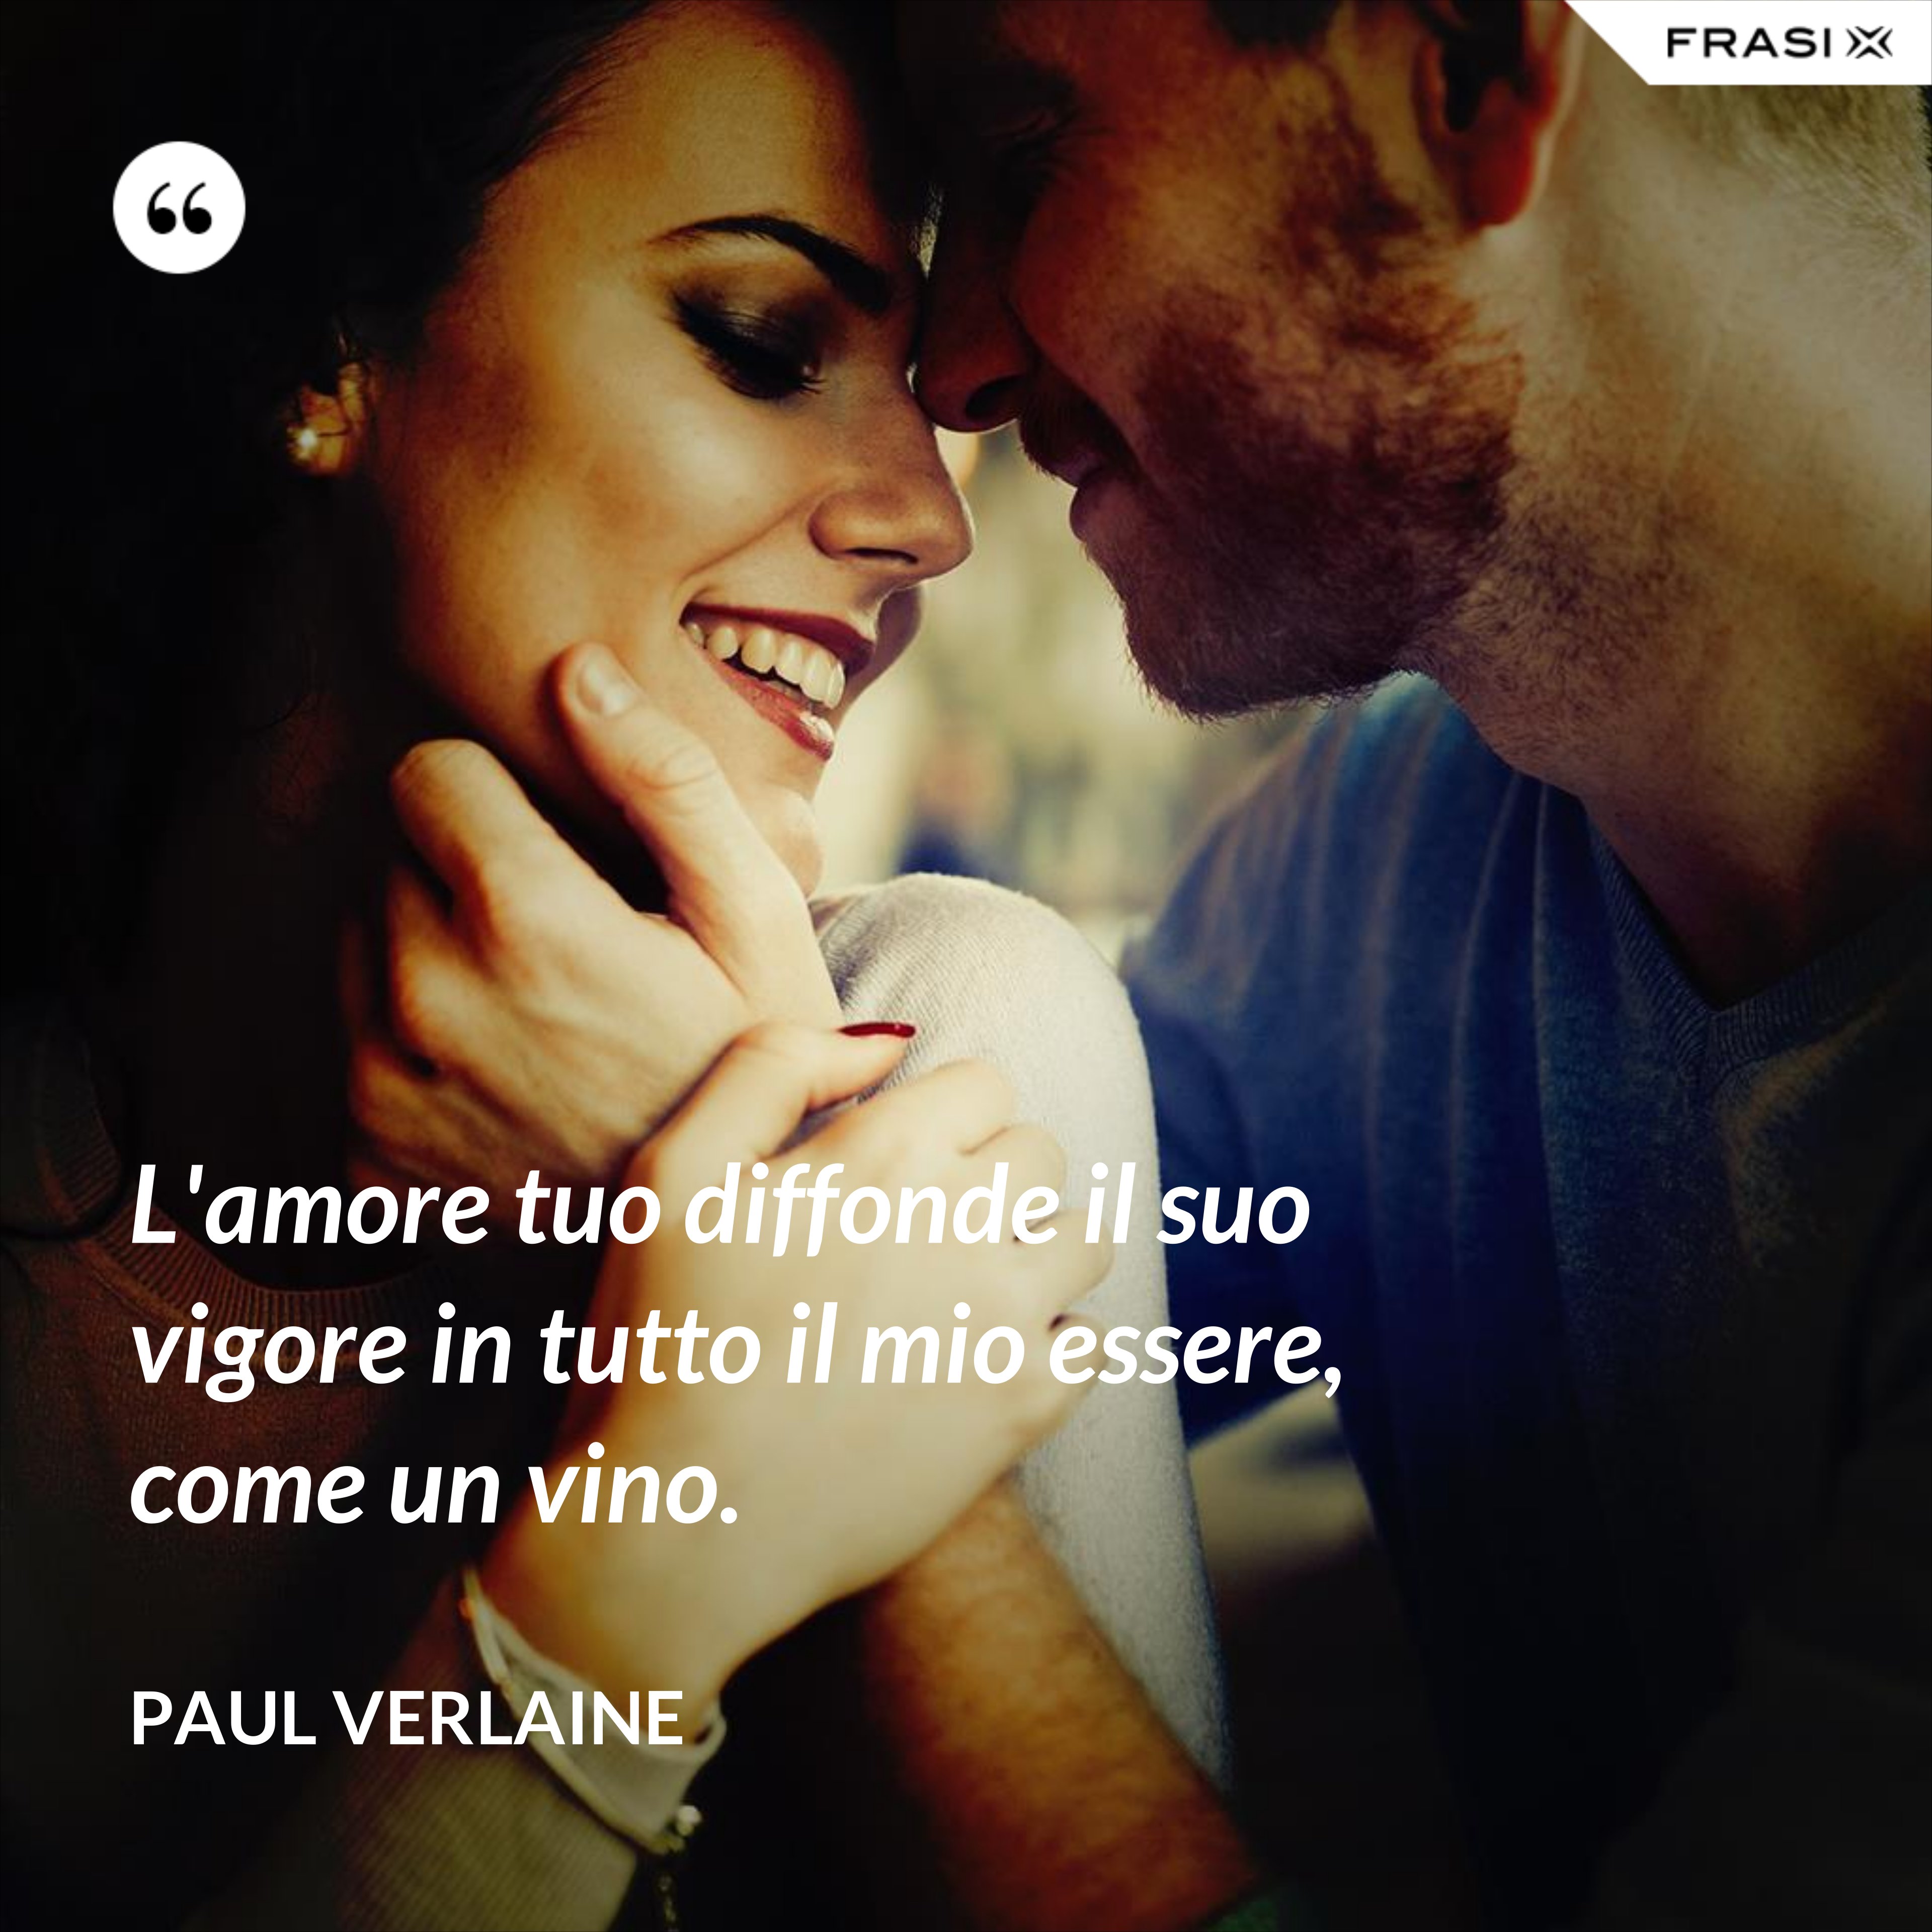 L'amore tuo diffonde il suo vigore in tutto il mio essere, come un vino. - Paul Verlaine